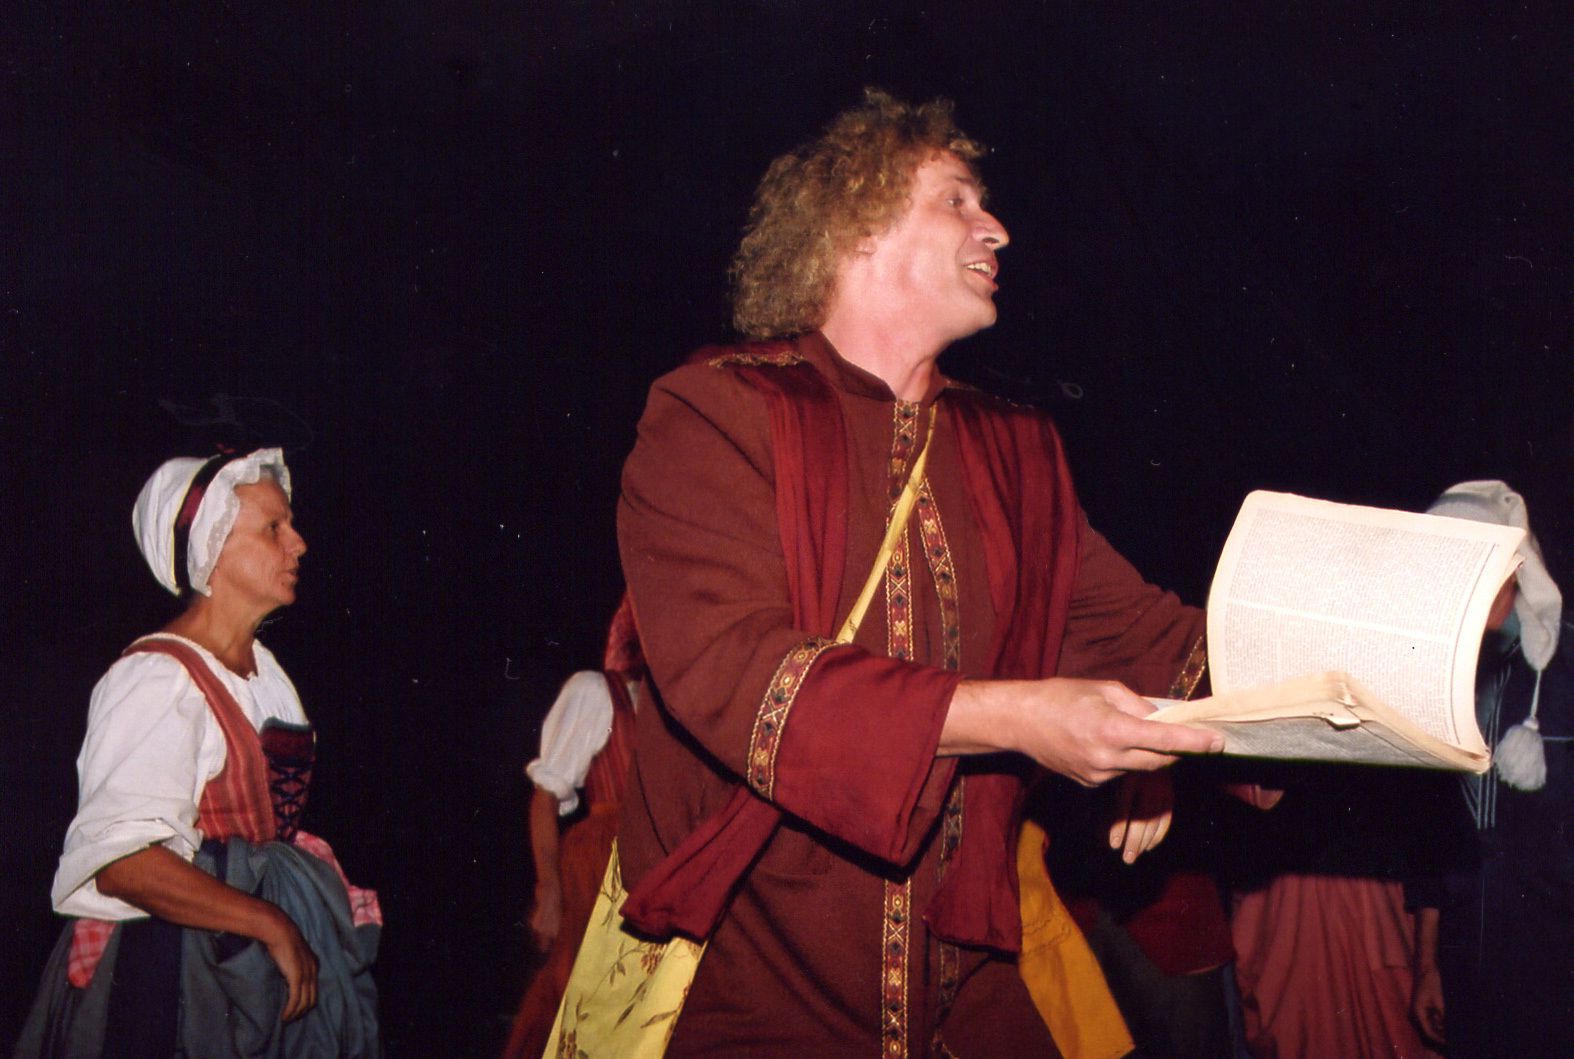 Premier spectacle des Mattagumber au château de Ferrette, les 20-21-27-28 août 2003.
En trois tableaux : 
I. La journée de travail
II. Le crépuscule des elfes
III. La nuit des sorcières